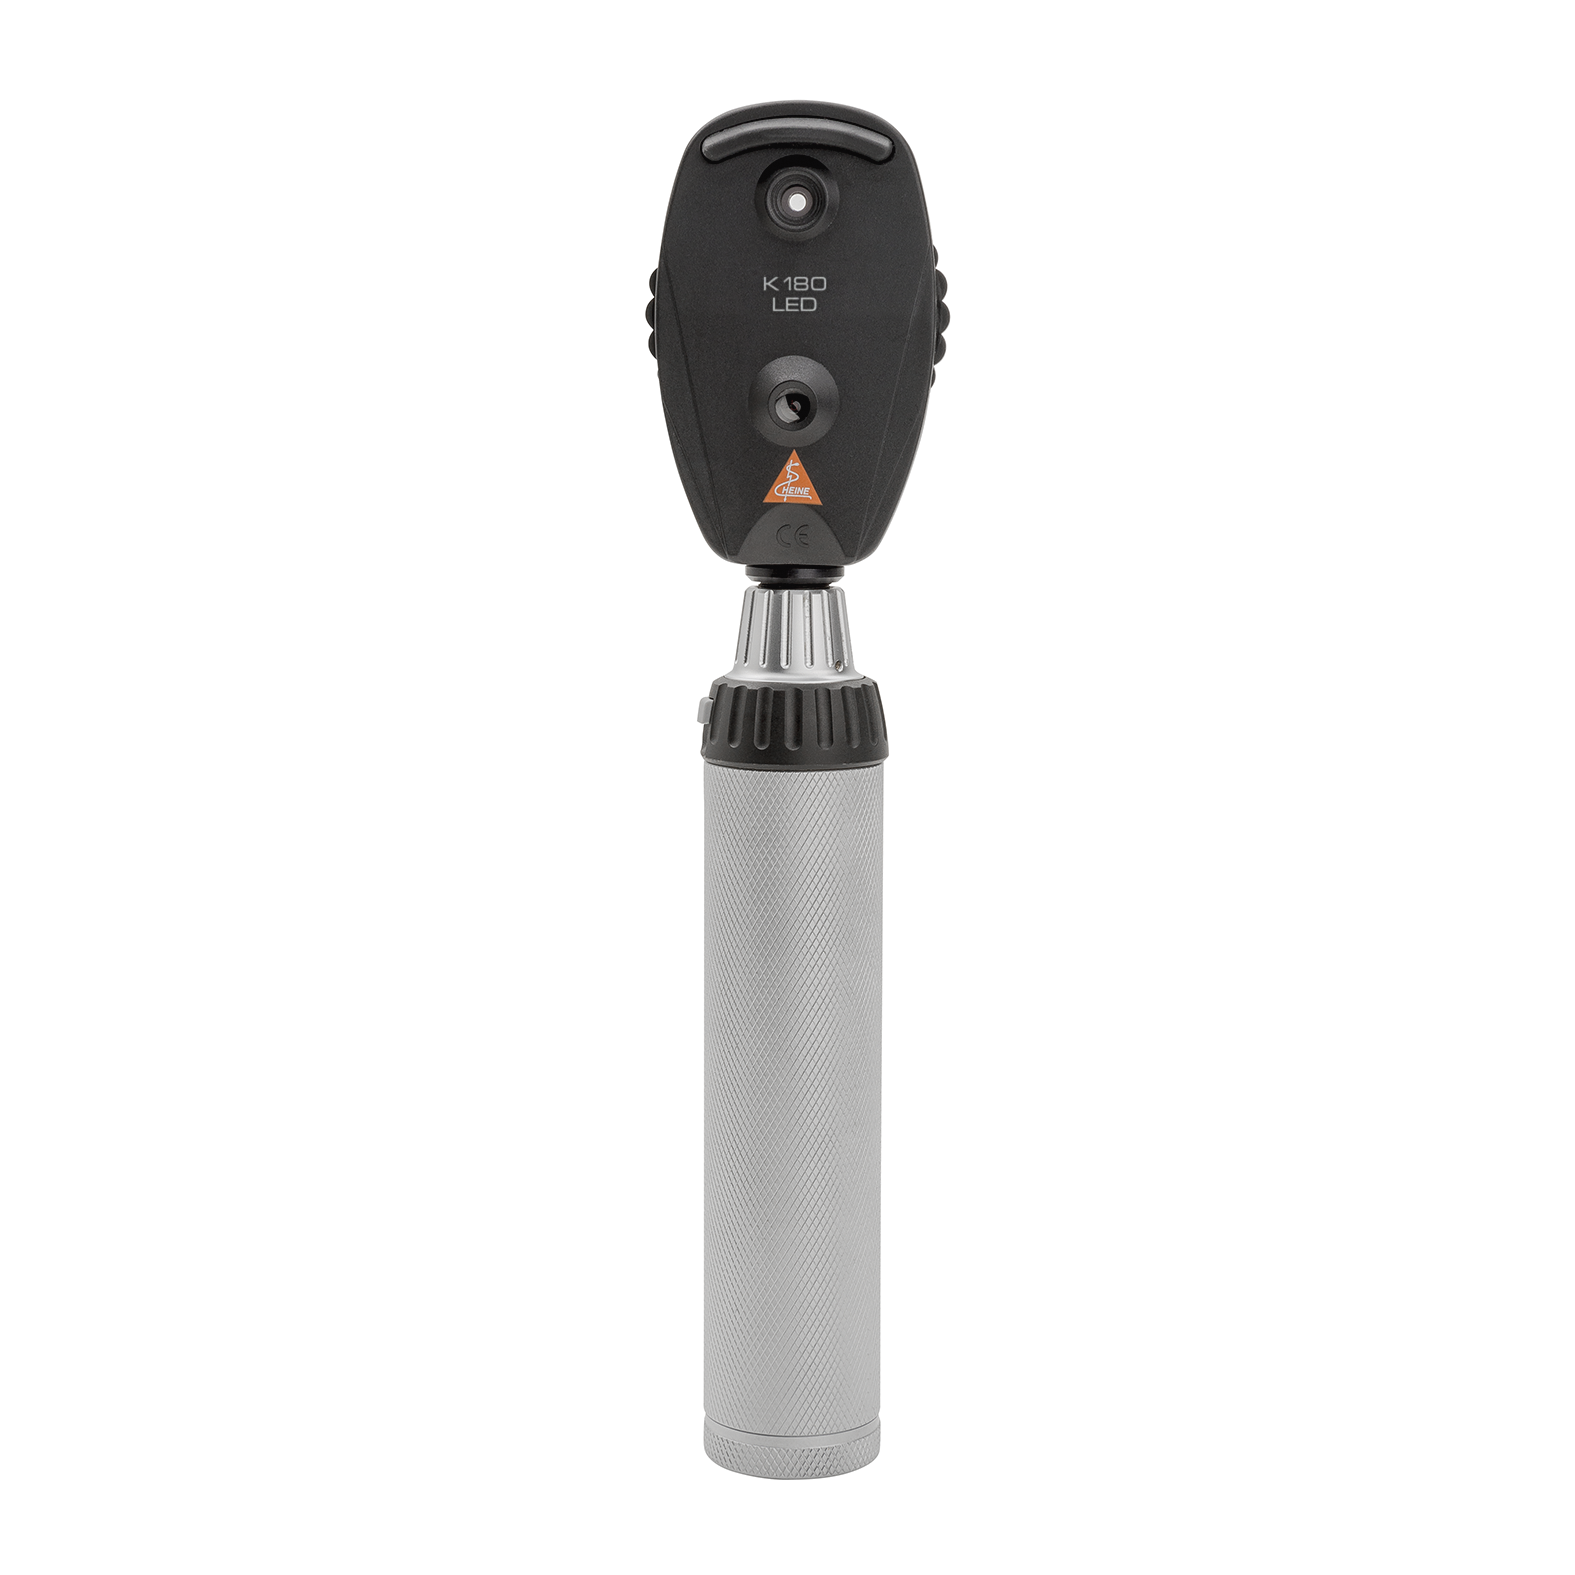 Oftalmoscopio HEINE K180 LED, in versione standard con rotella di apertura 1, astuccio morbido, manico ricaricabile BETA4 USB con cavo USB e alimentatore a spina